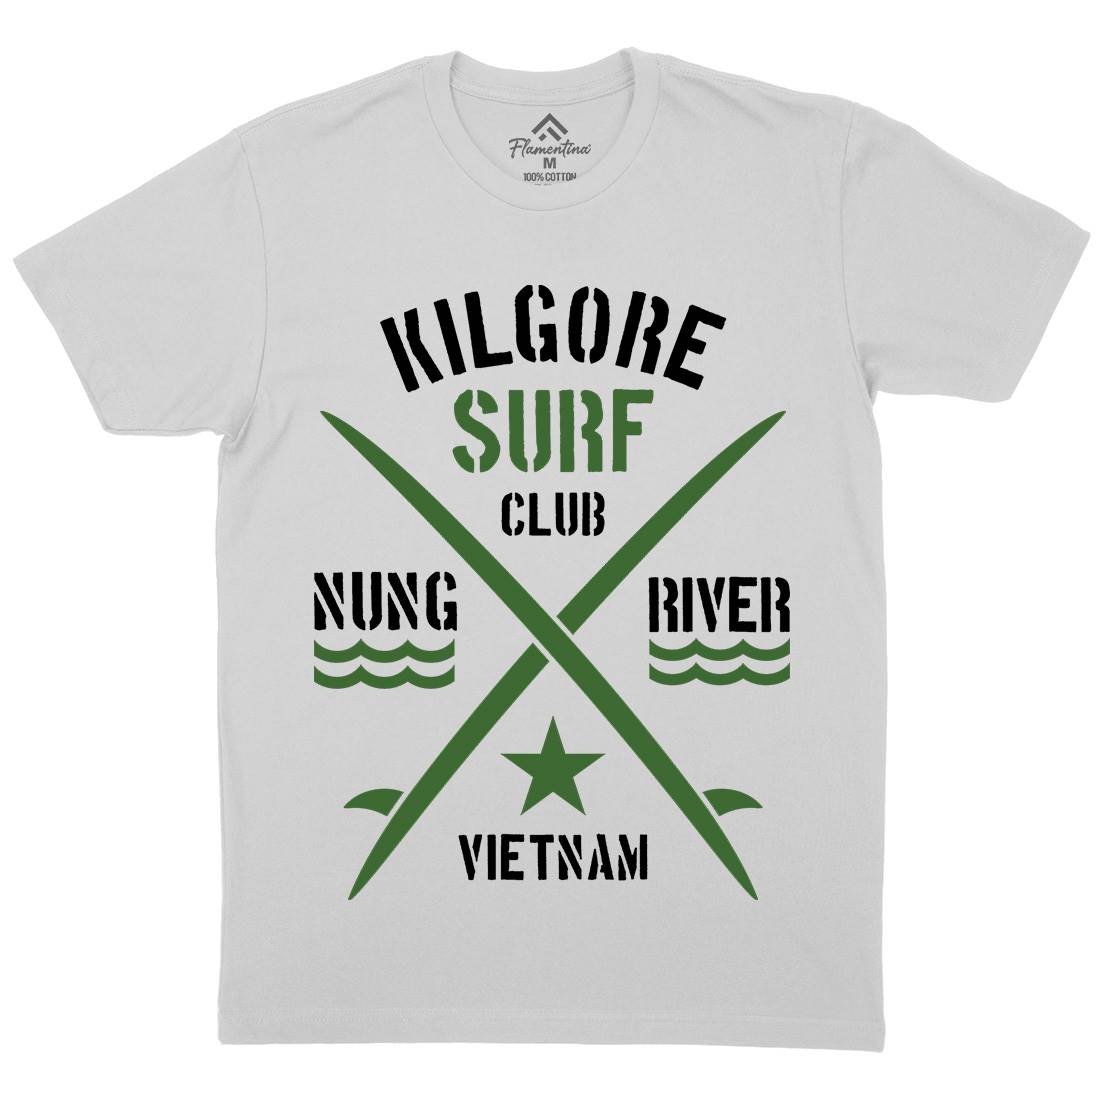 Kilgore Club Mens Crew Neck T-Shirt Surf D234